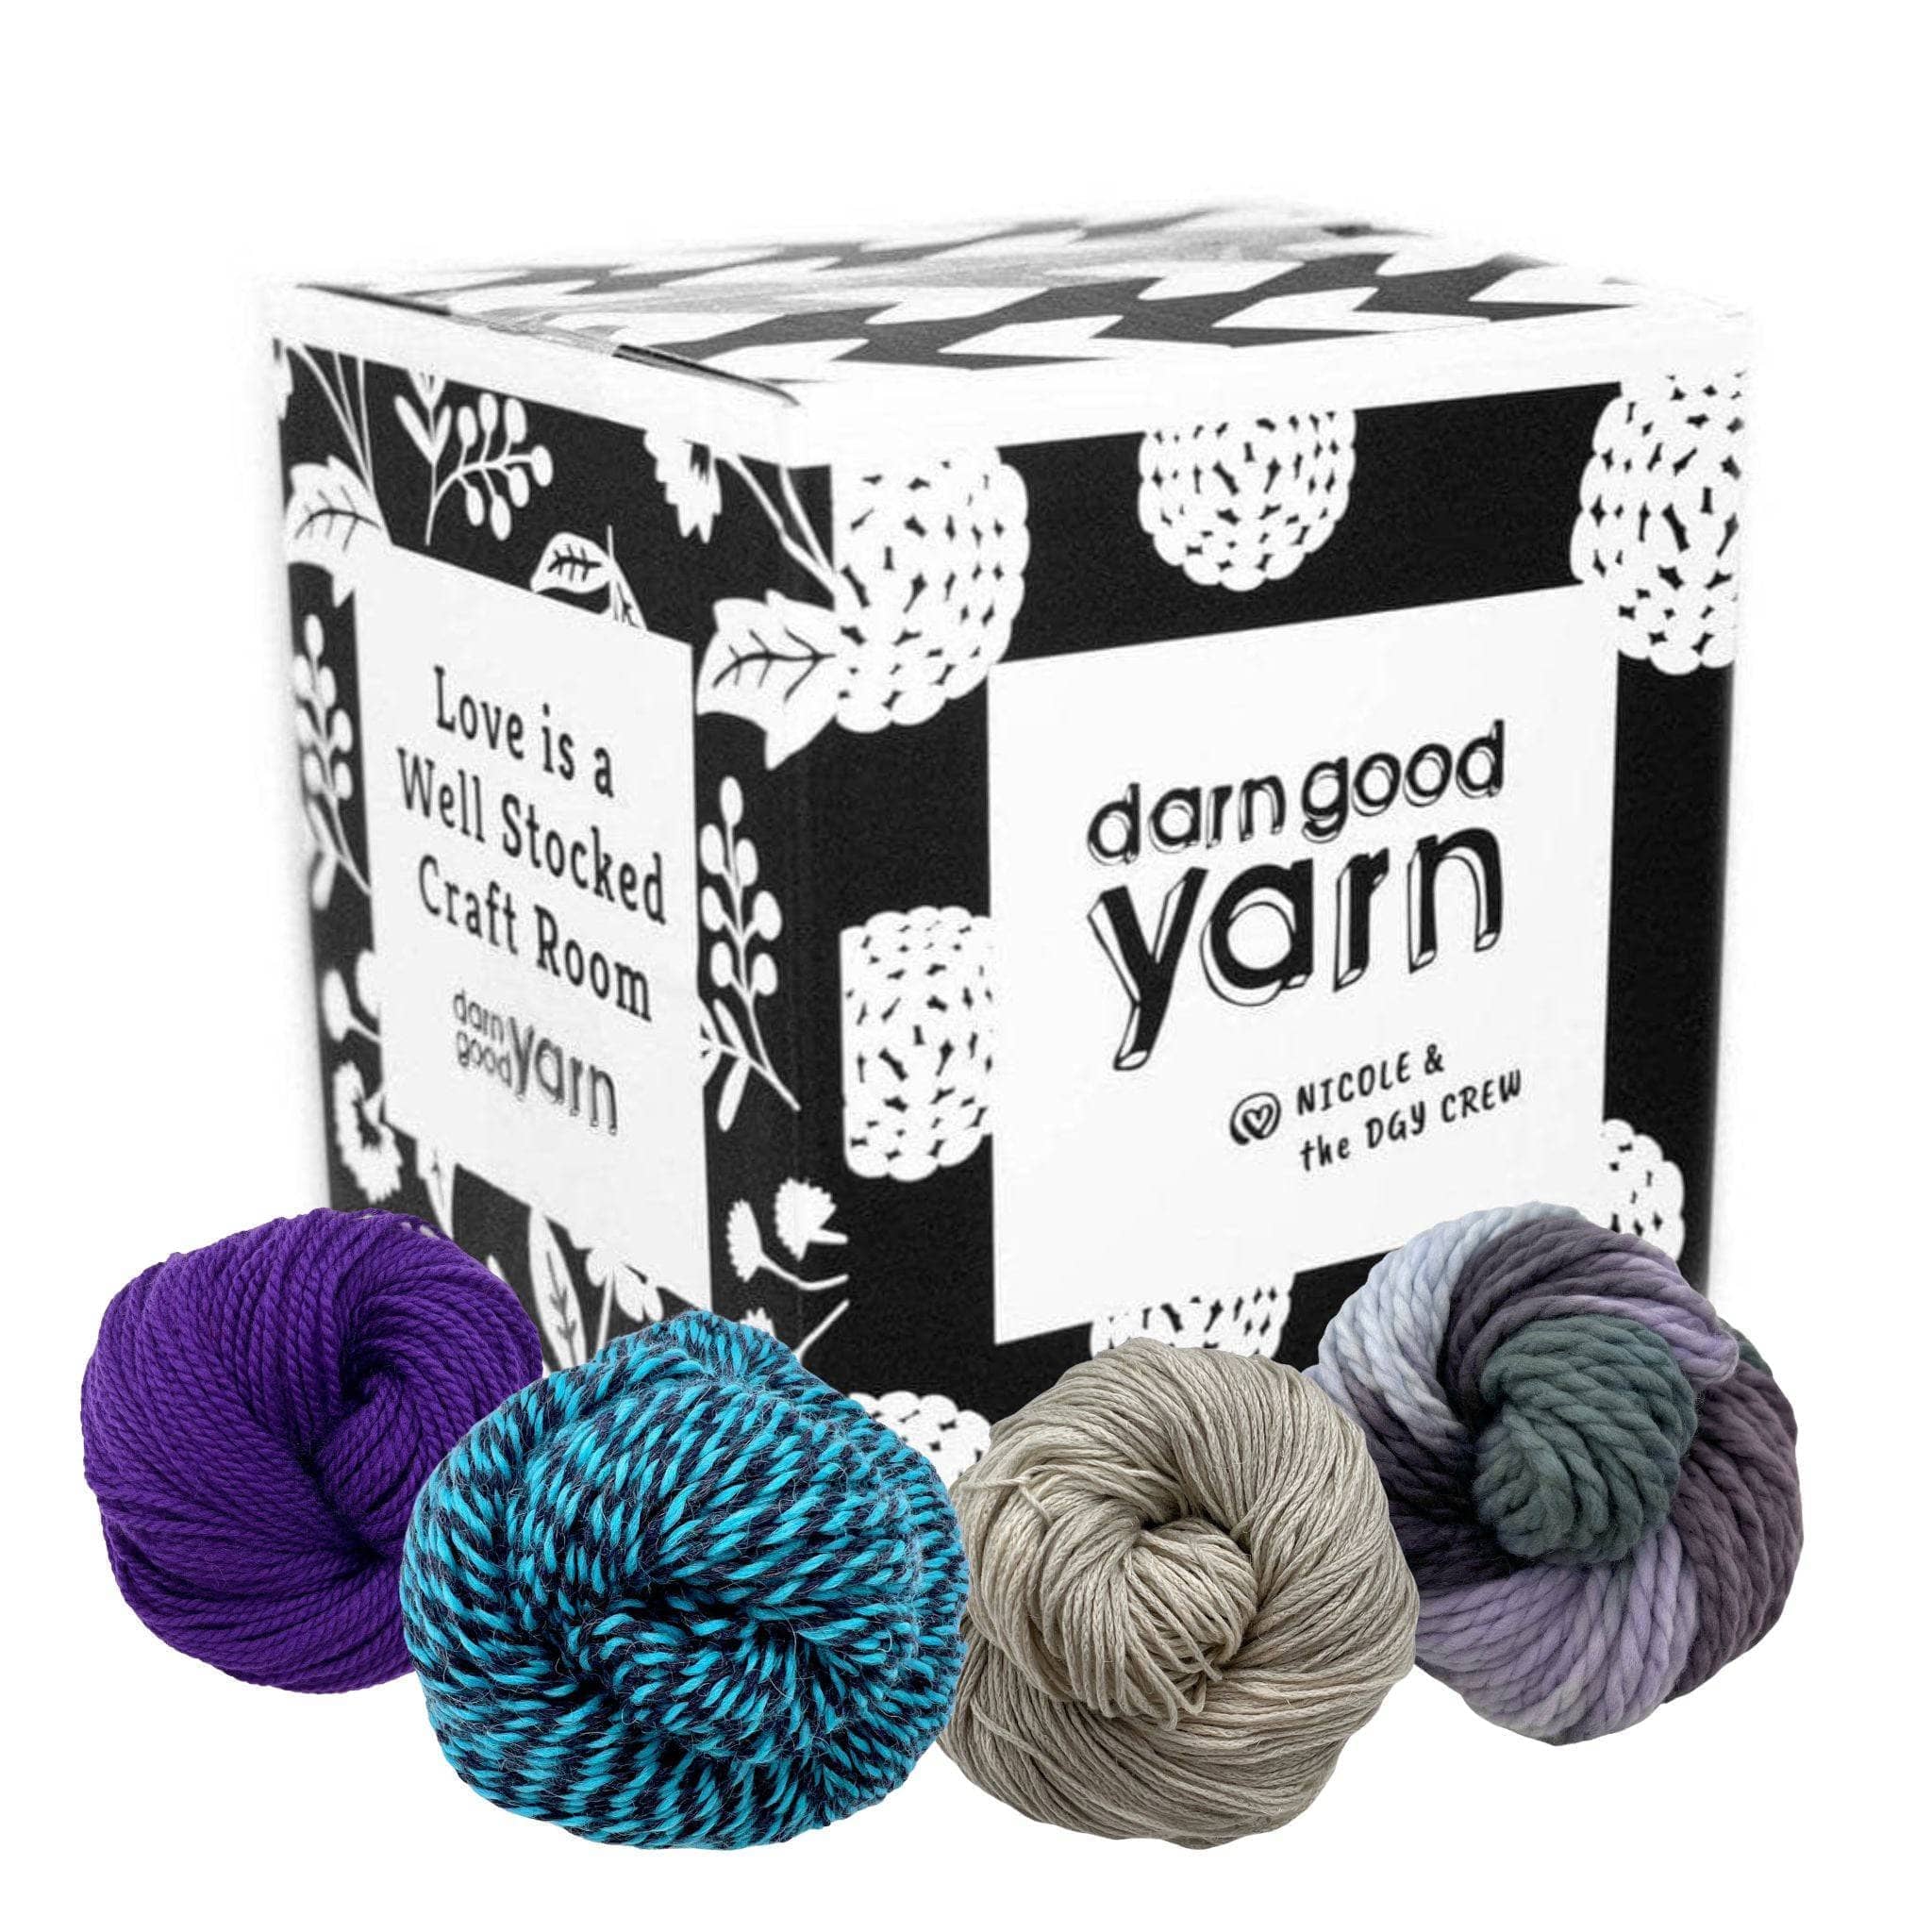 Wolly Wonders Beginners DIY Crochet Amigurmi Kit with Yarn and